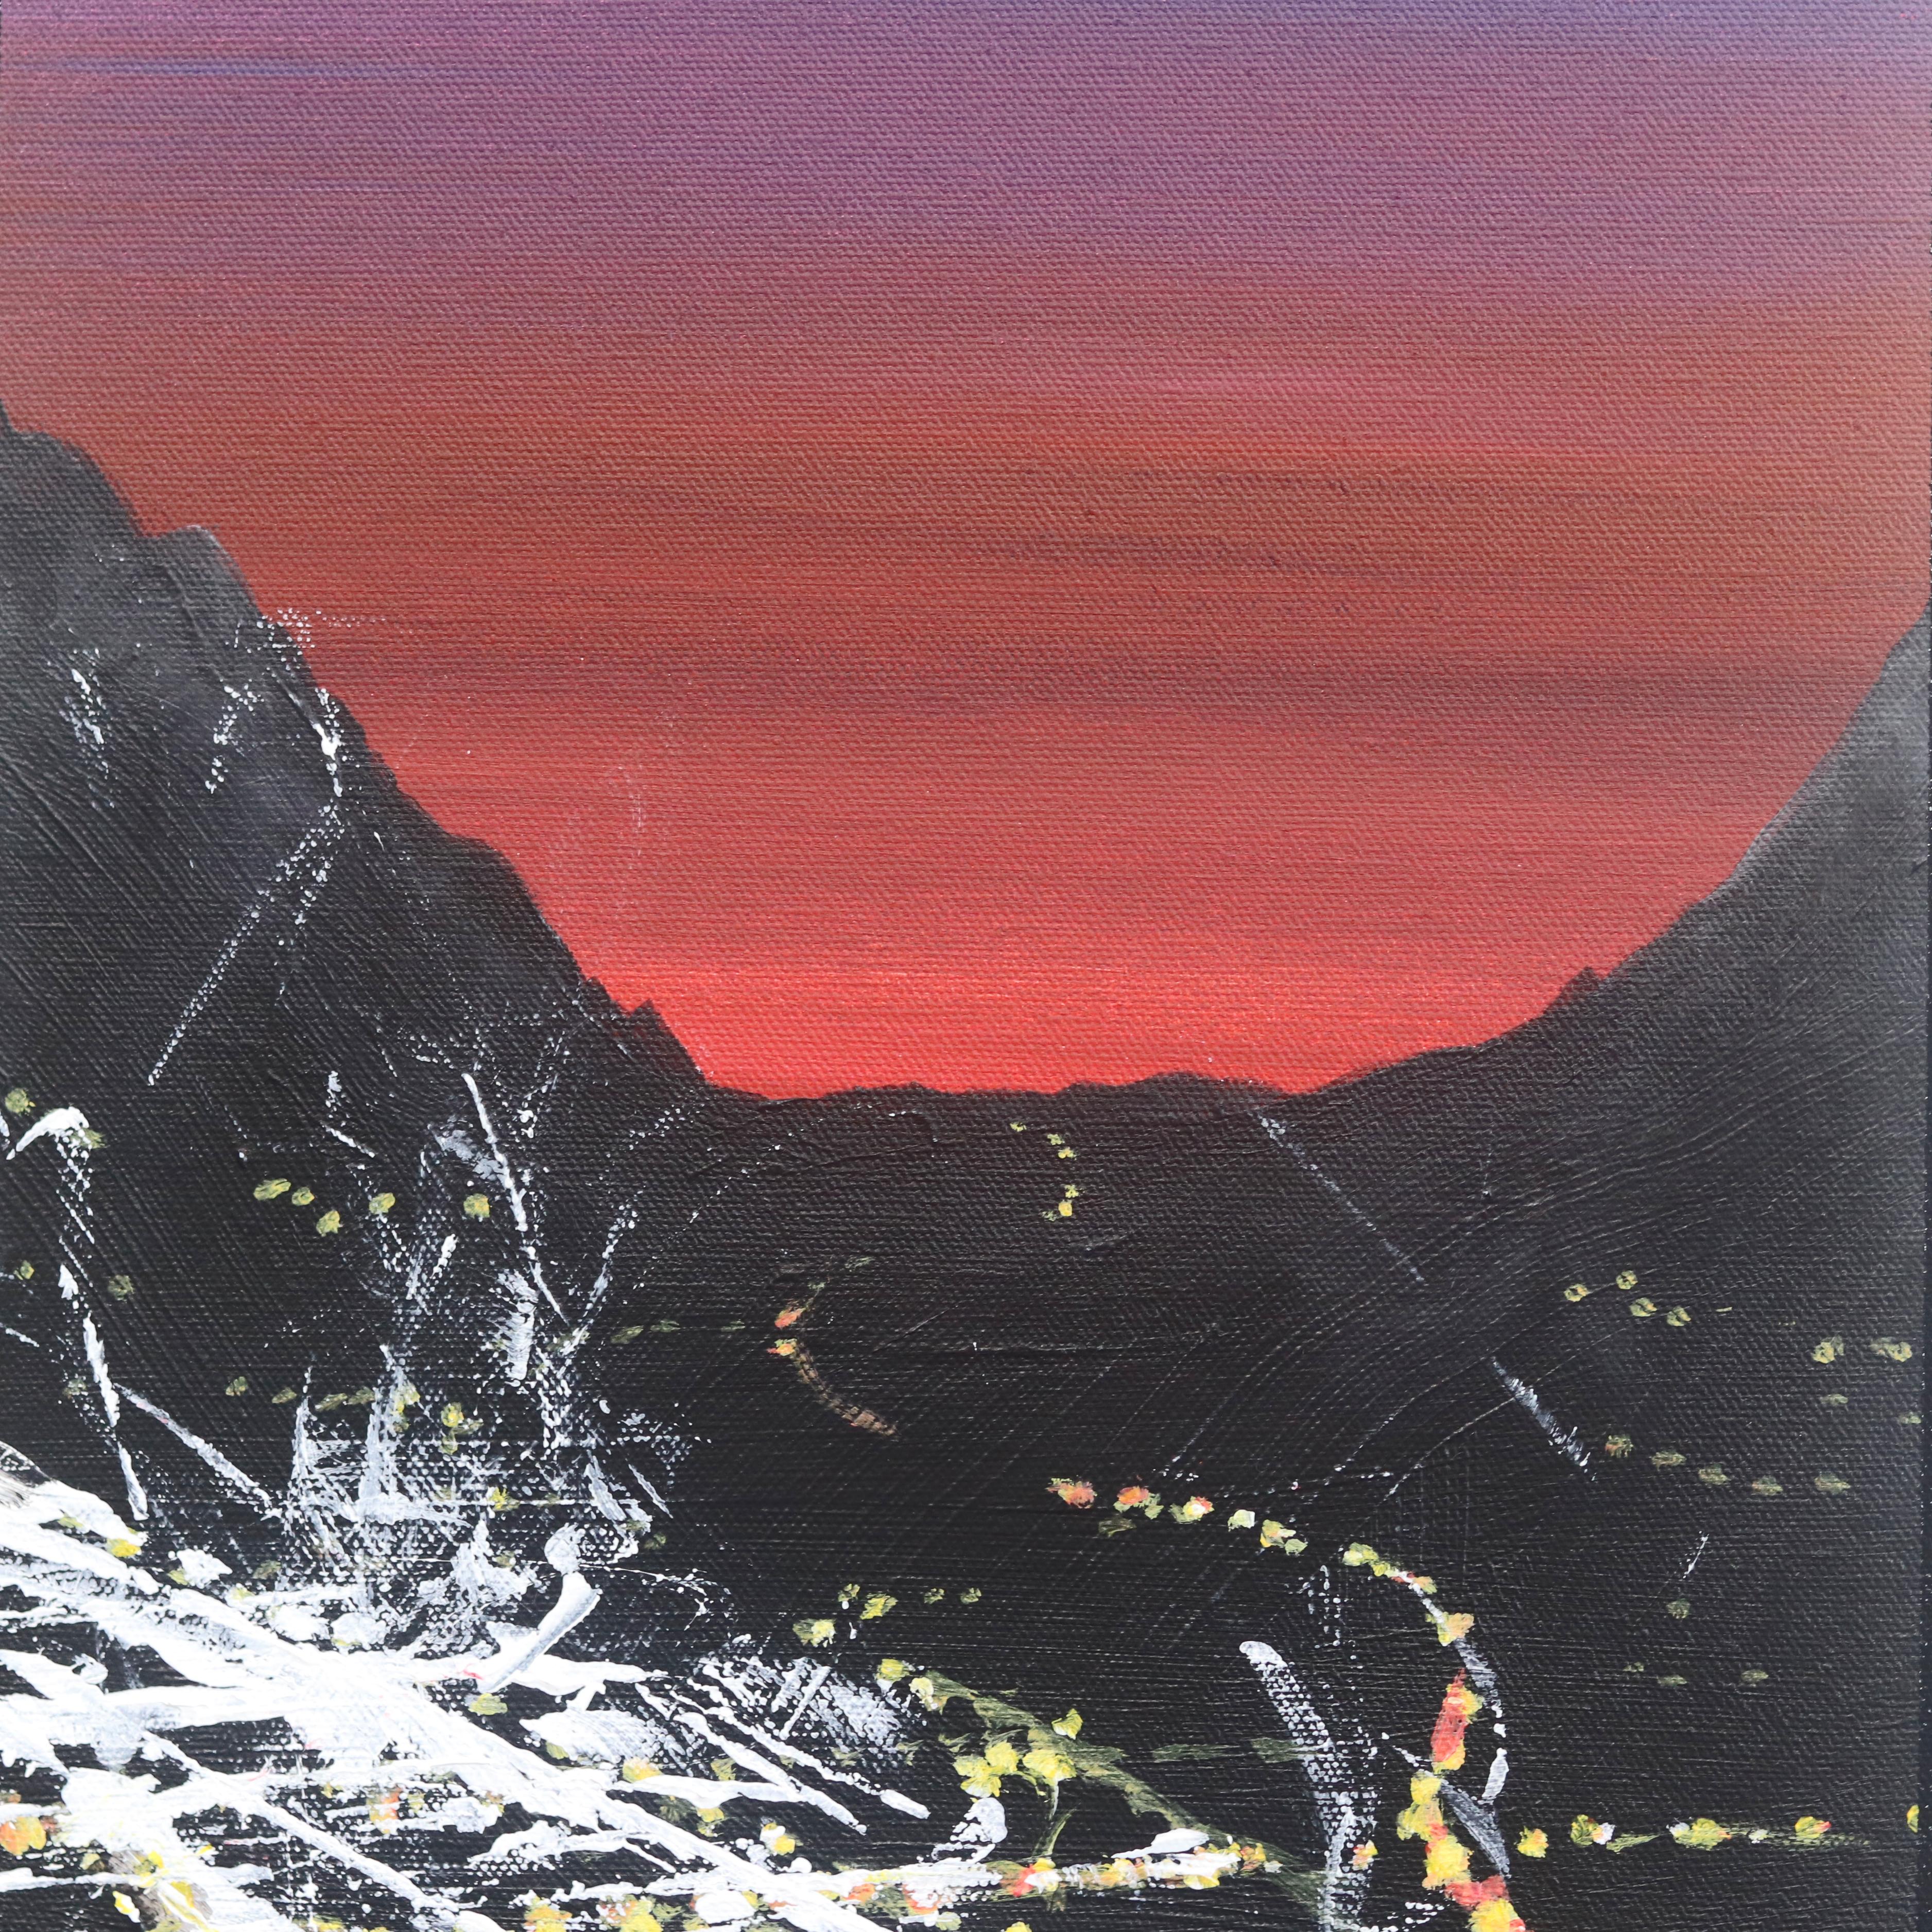 Las Palmas Sunset Aerial - Contemporary Painting by Pete Kasprzak